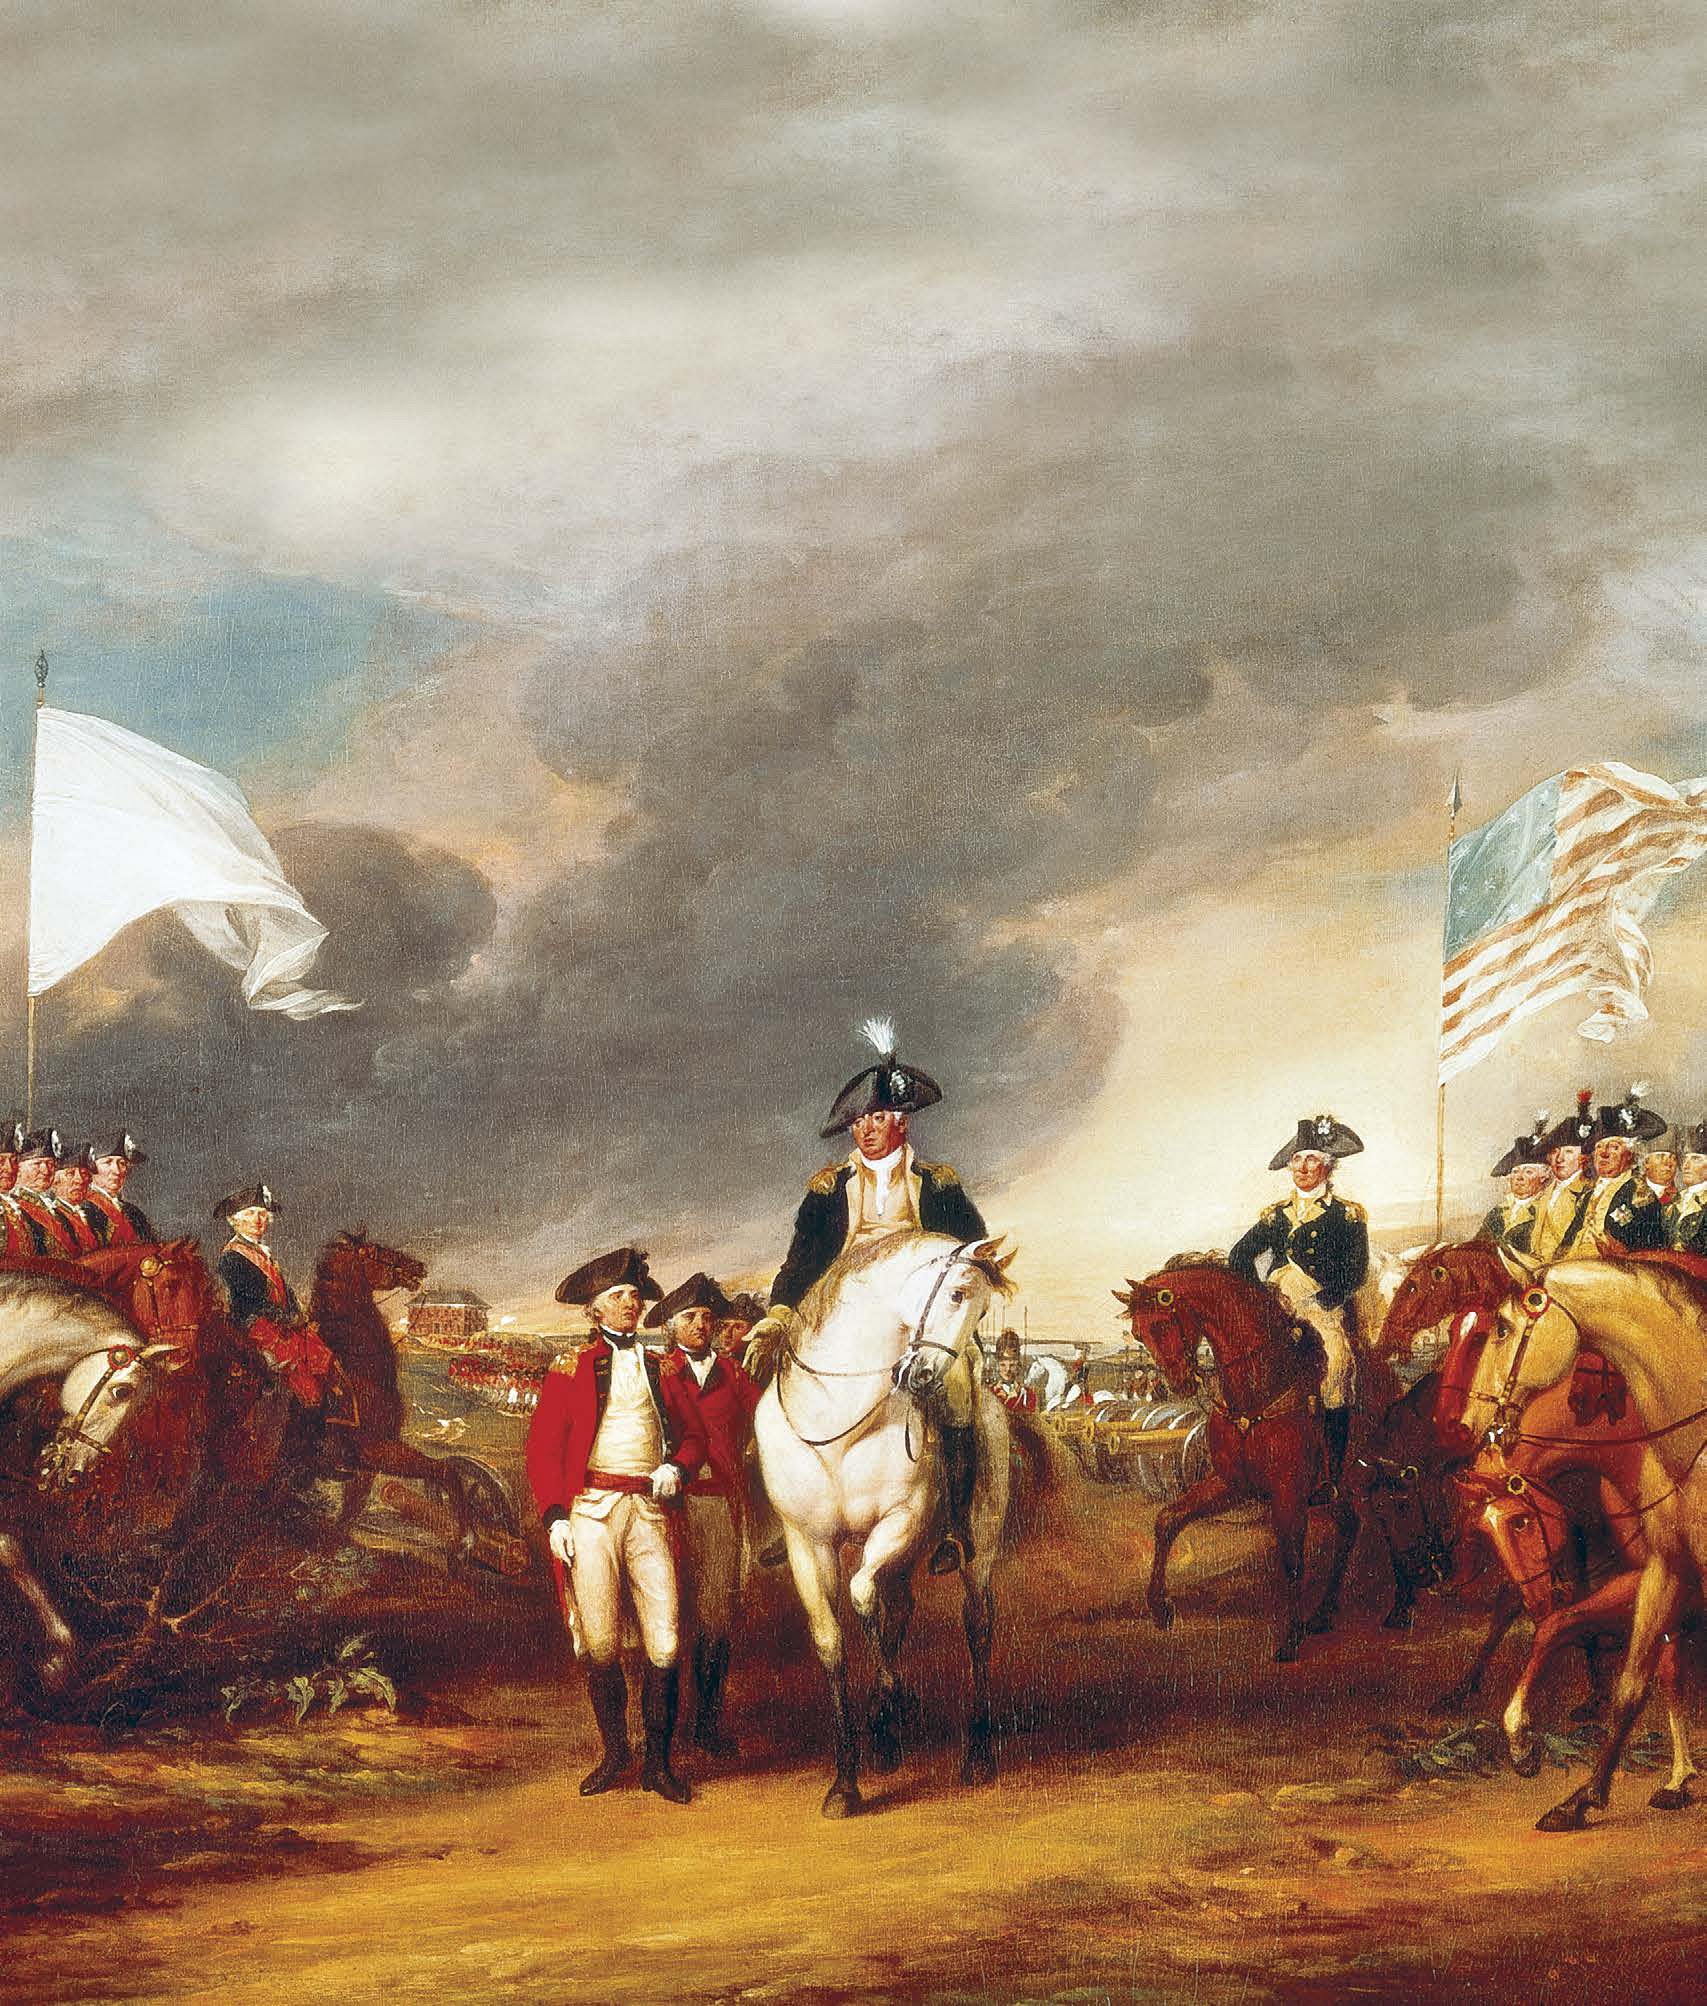 La última batalla importante de la guerra de la Independencia de Estados Unidos - photo 6